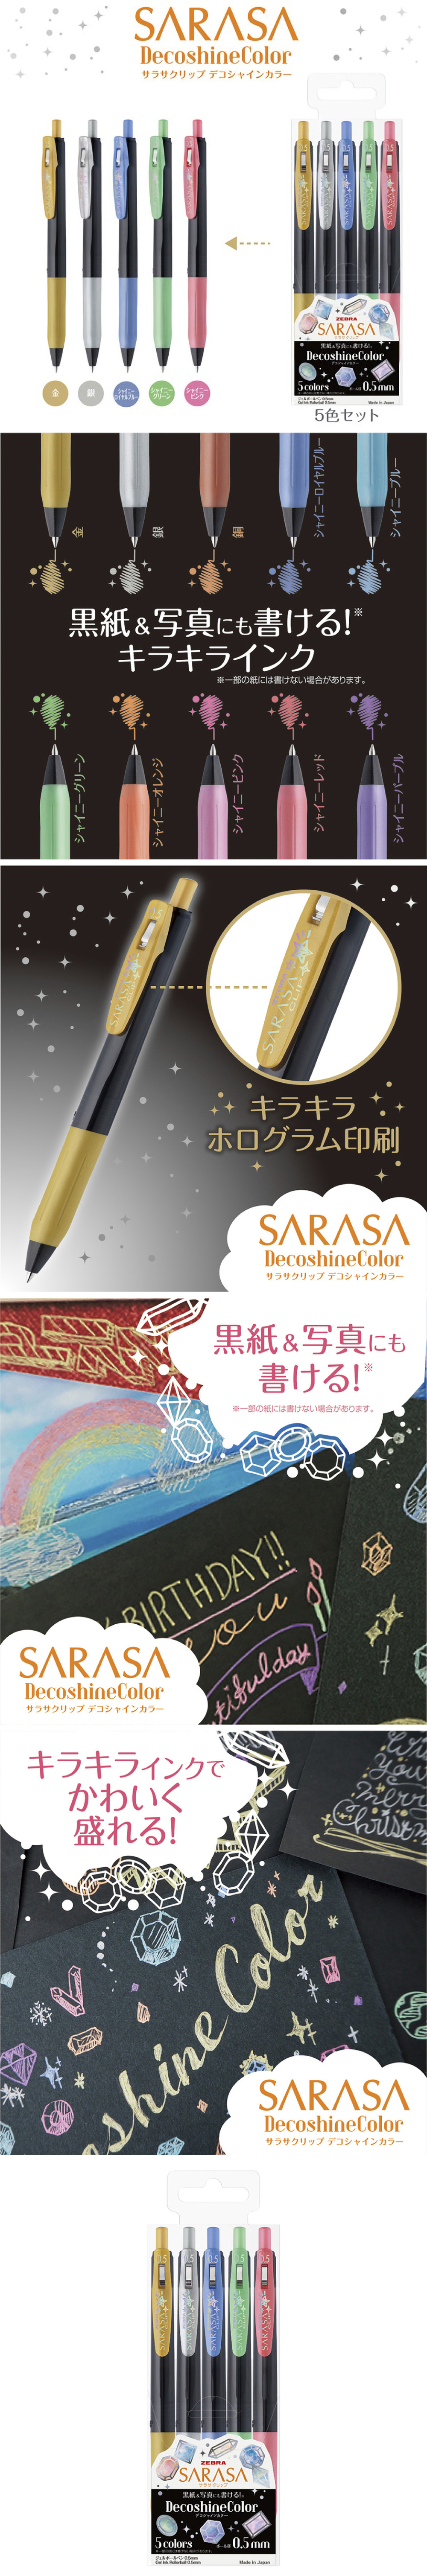 sarasa 鋼珠筆 sarasa 中性筆